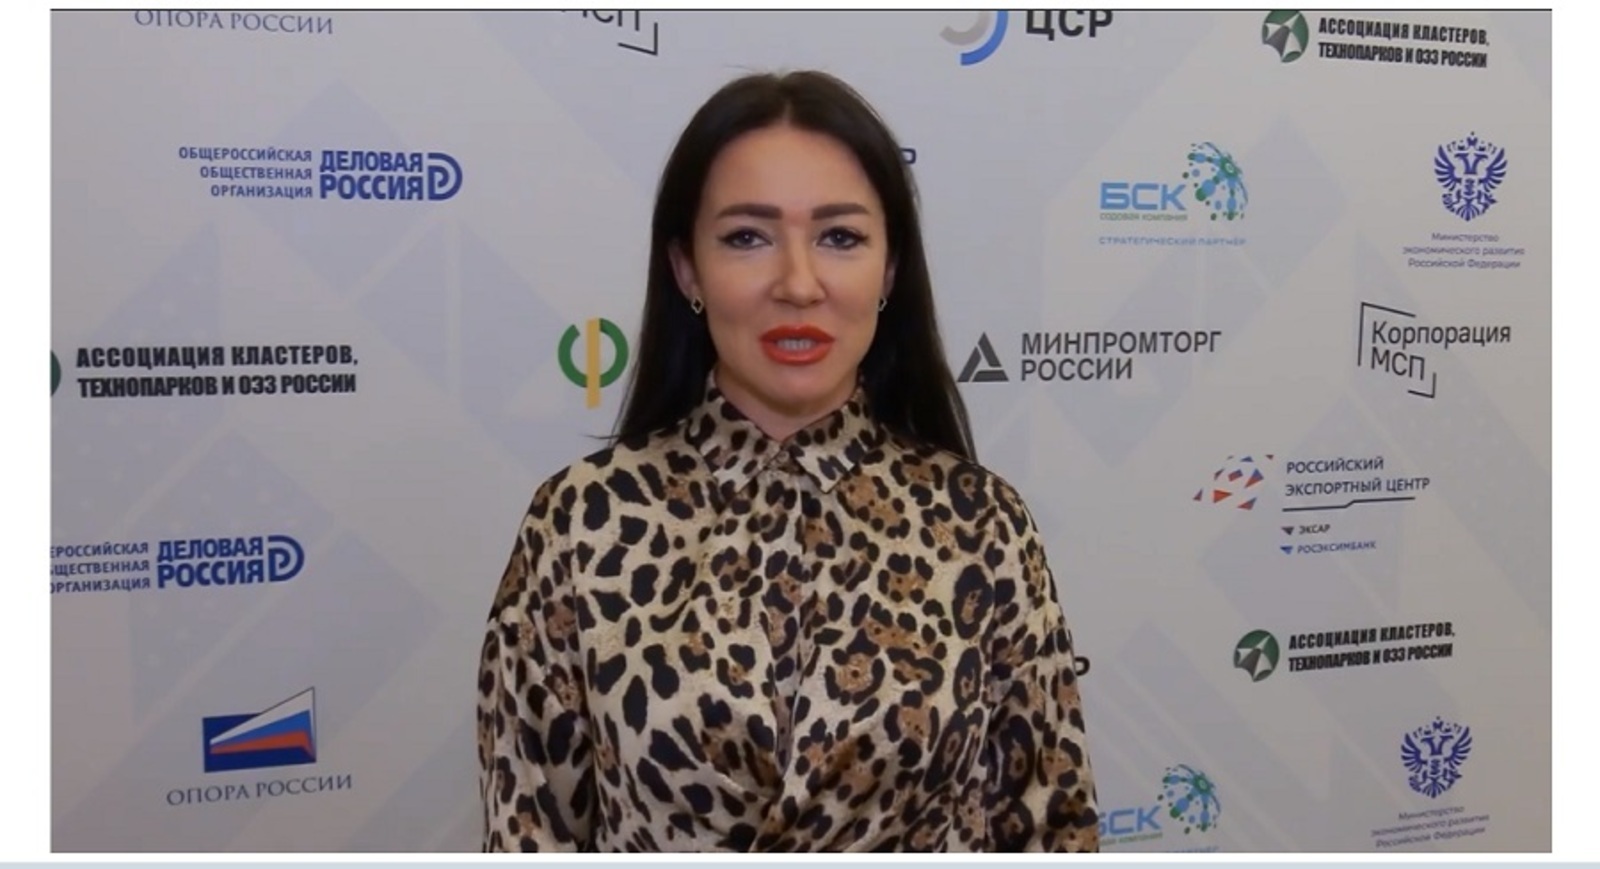 Наталья Демченко: Неделя бизнеса в Уфе — грандиозное событие